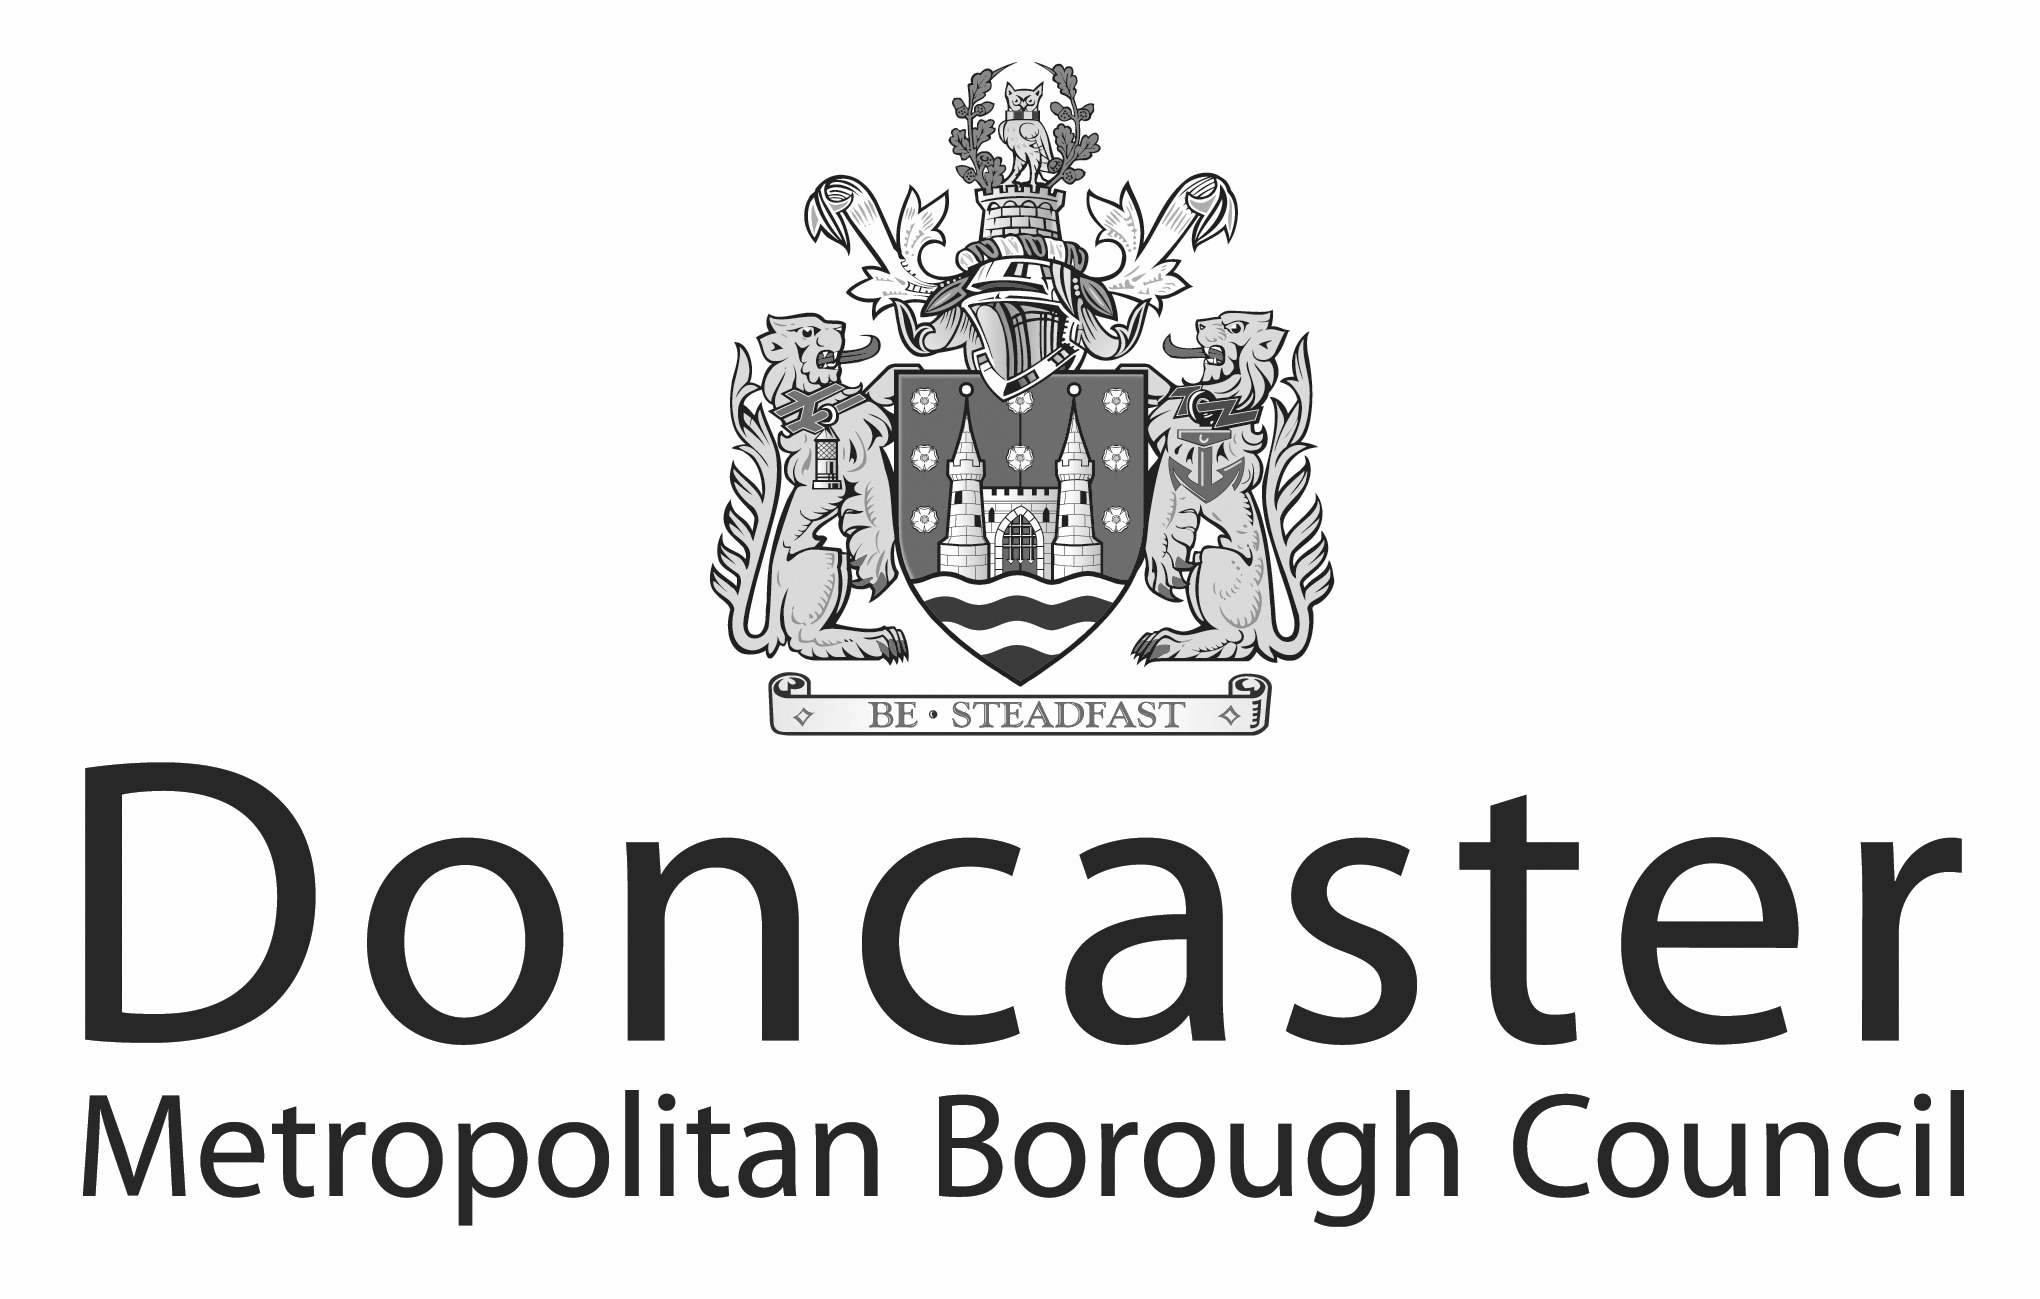 Doncaster Council Logo